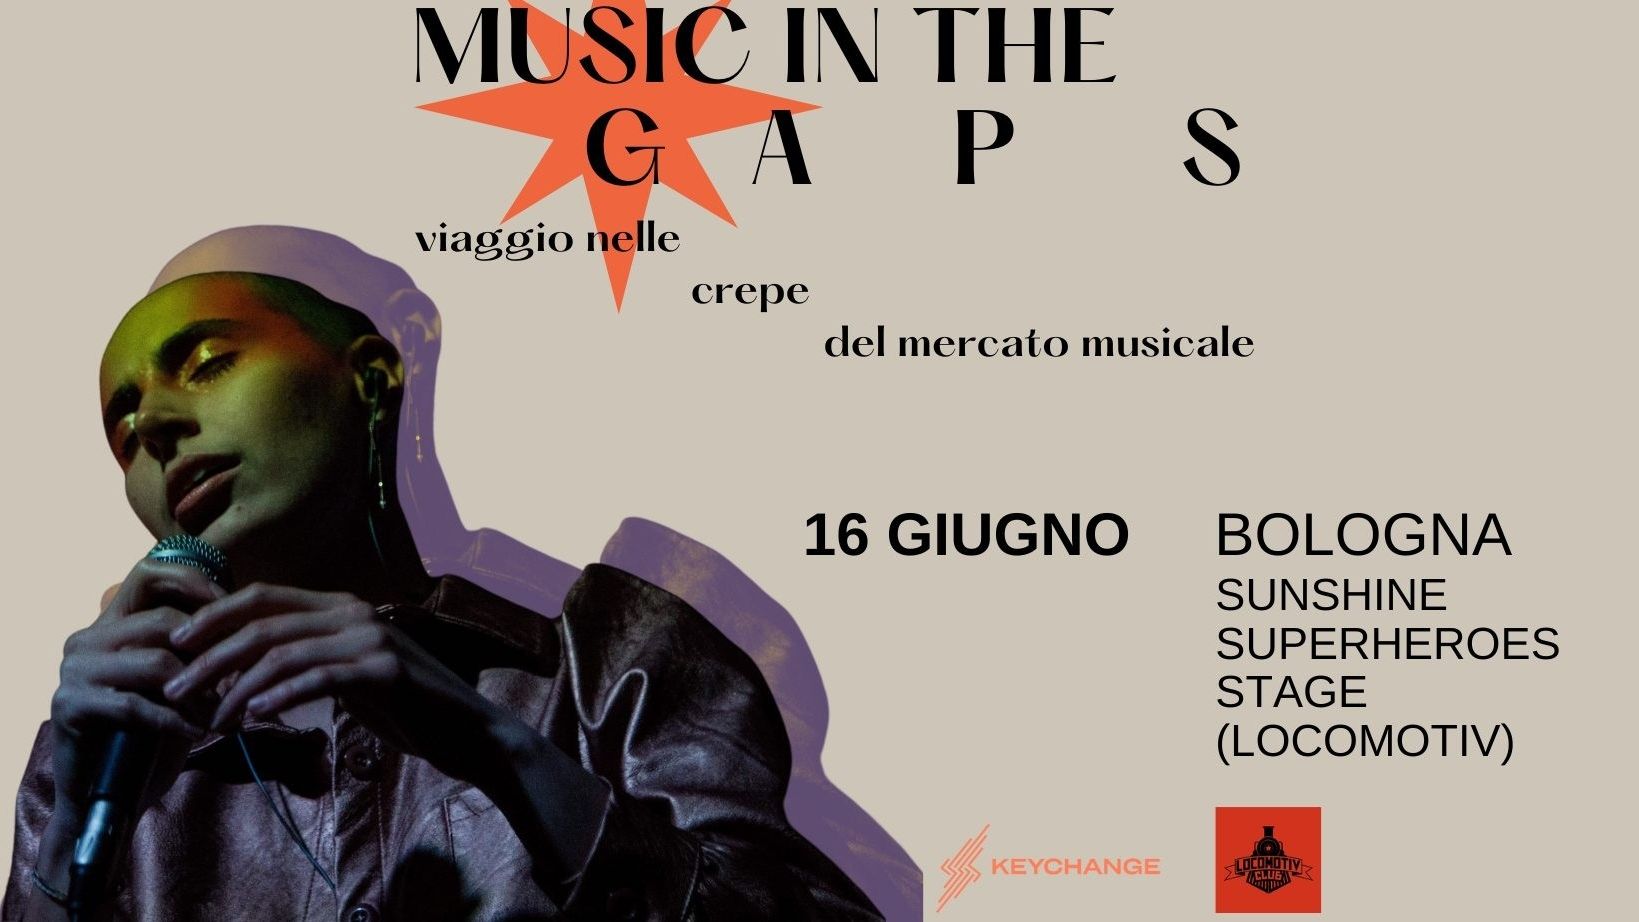 Music in the gaps - viaggio nelle crepe del mercato musicale